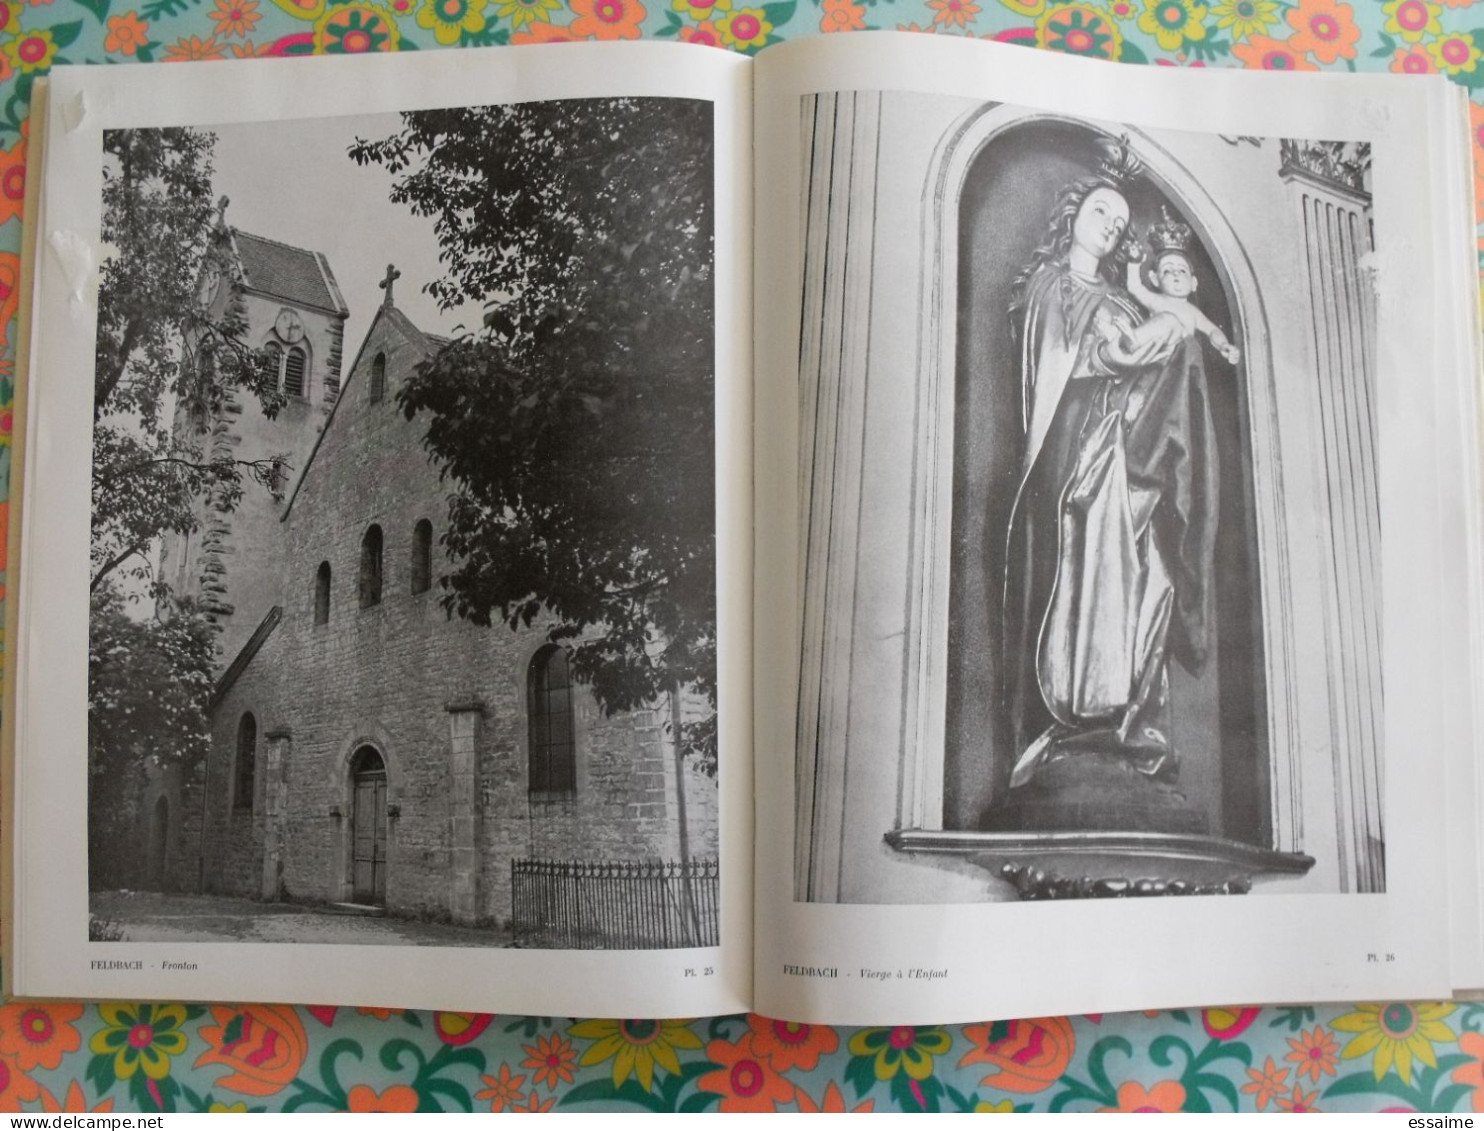 pèlerinages alsaciens de la vierge Marie. Alsace. éd. du Drakkar, Strasbourg 1954. nombreuses photos.